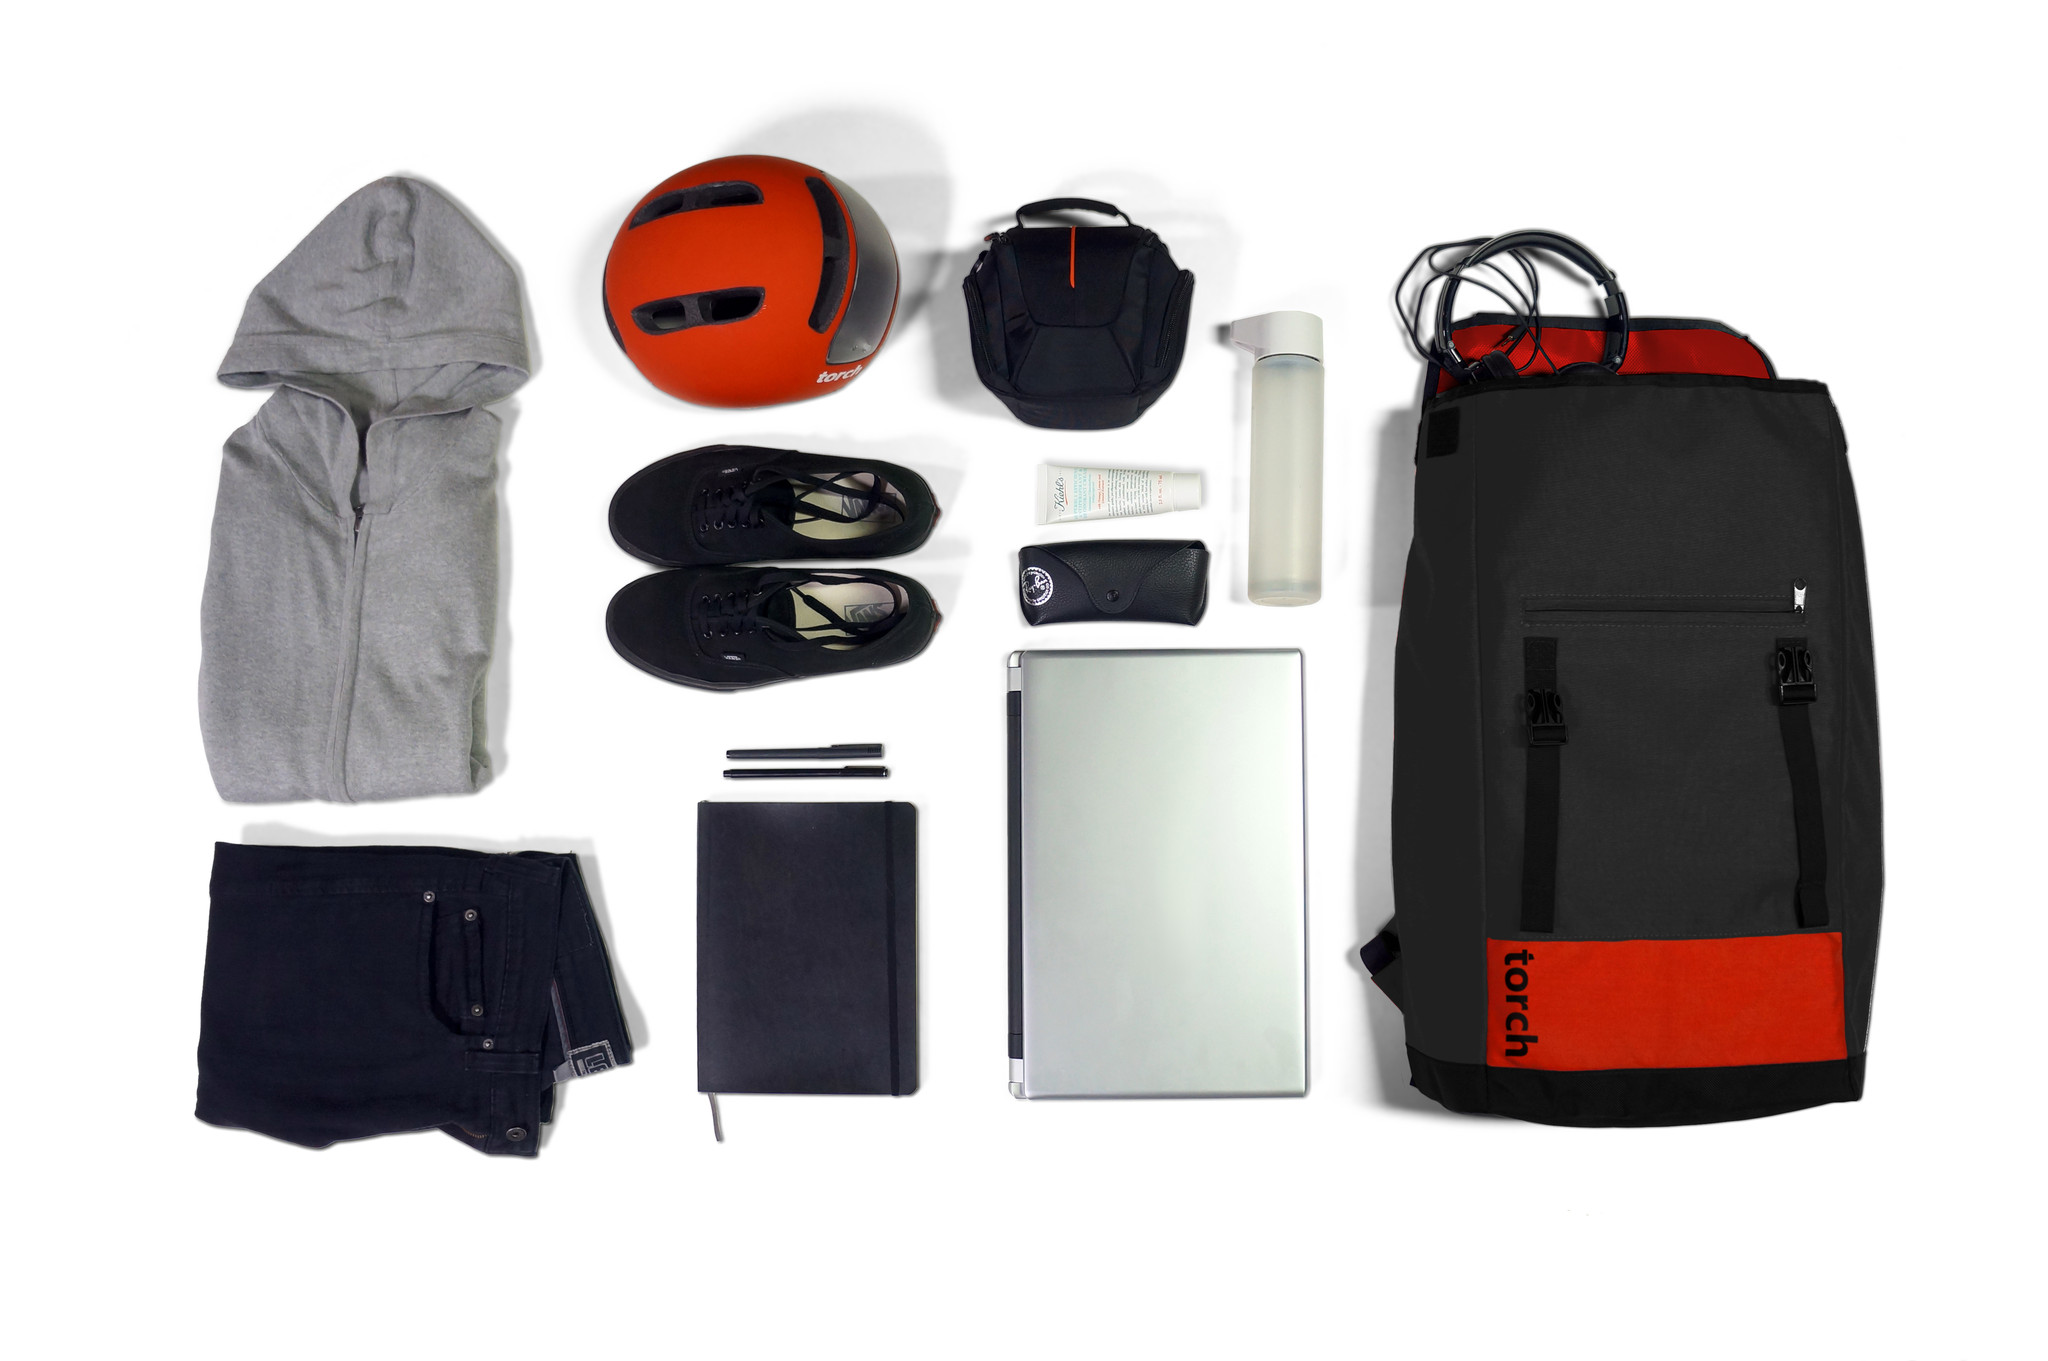 Lo zaino Flux Backpack circondato dagli oggetti che può contenere